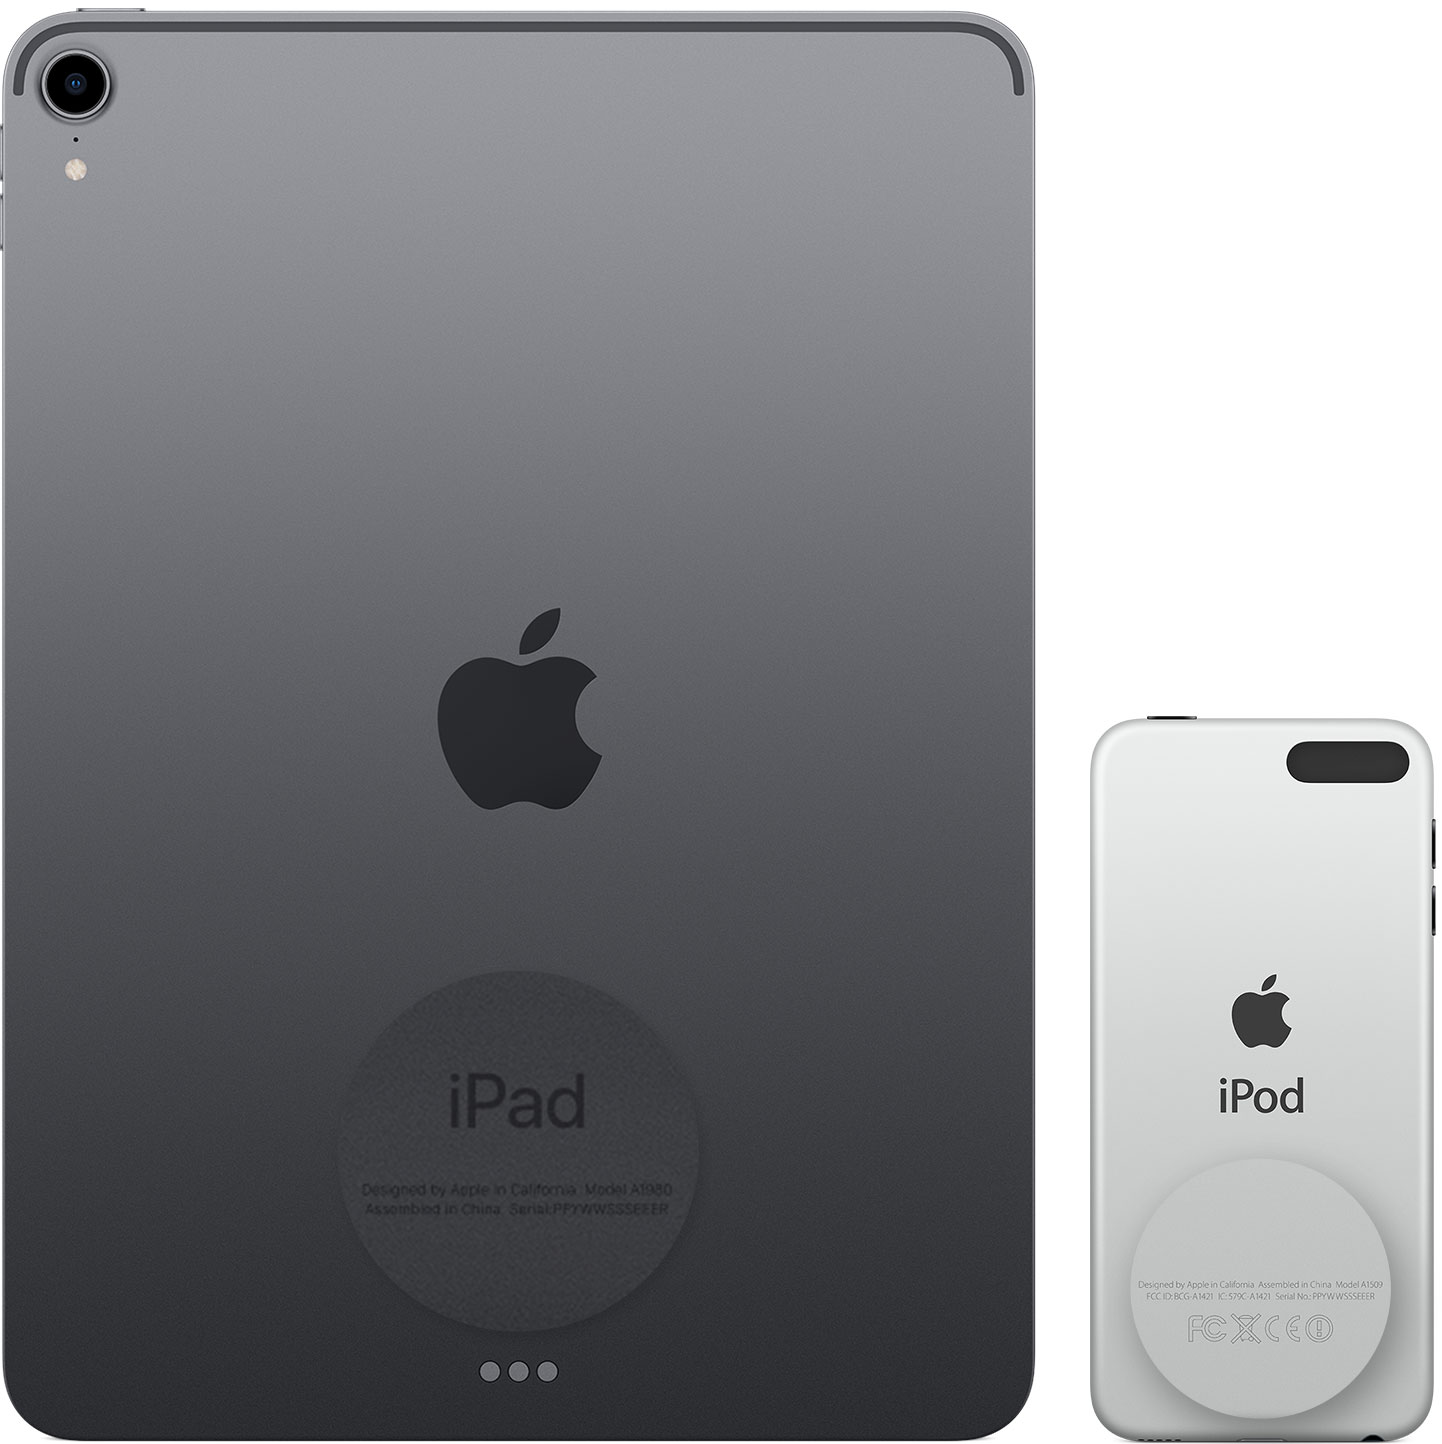 Slika prikazuje poleđinu iPad i iPod touch uređaja